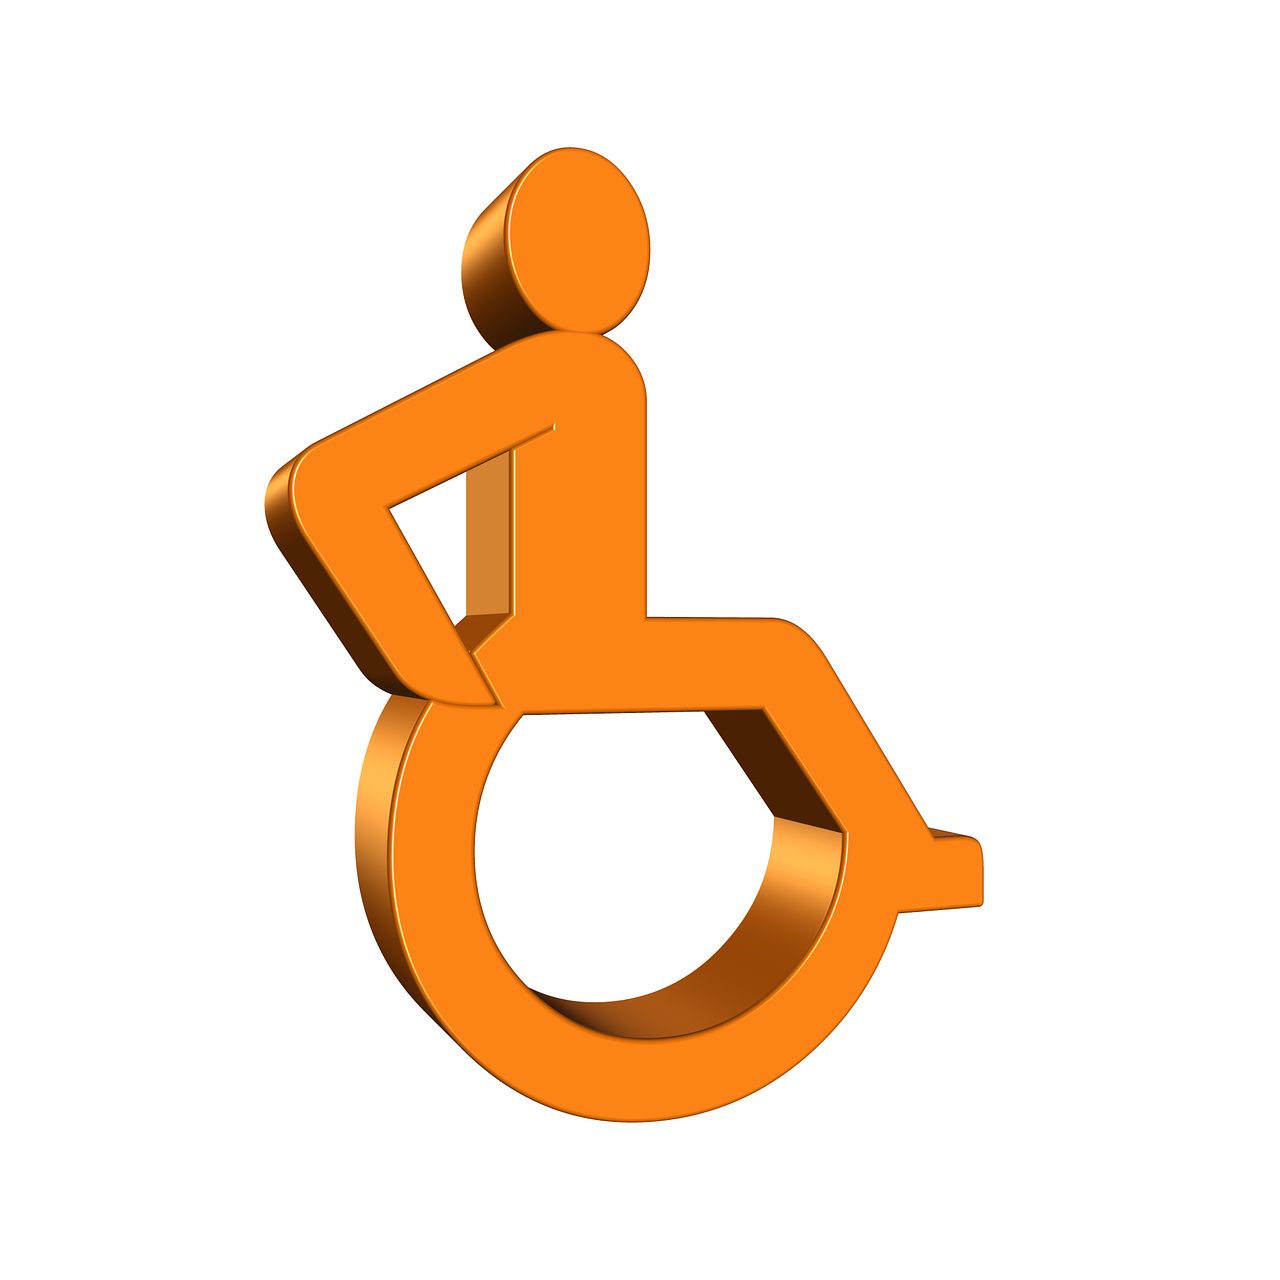 Gast prins v.o.f. kosten instellingen gehandicaptenzorg verstandelijk gehandicapten